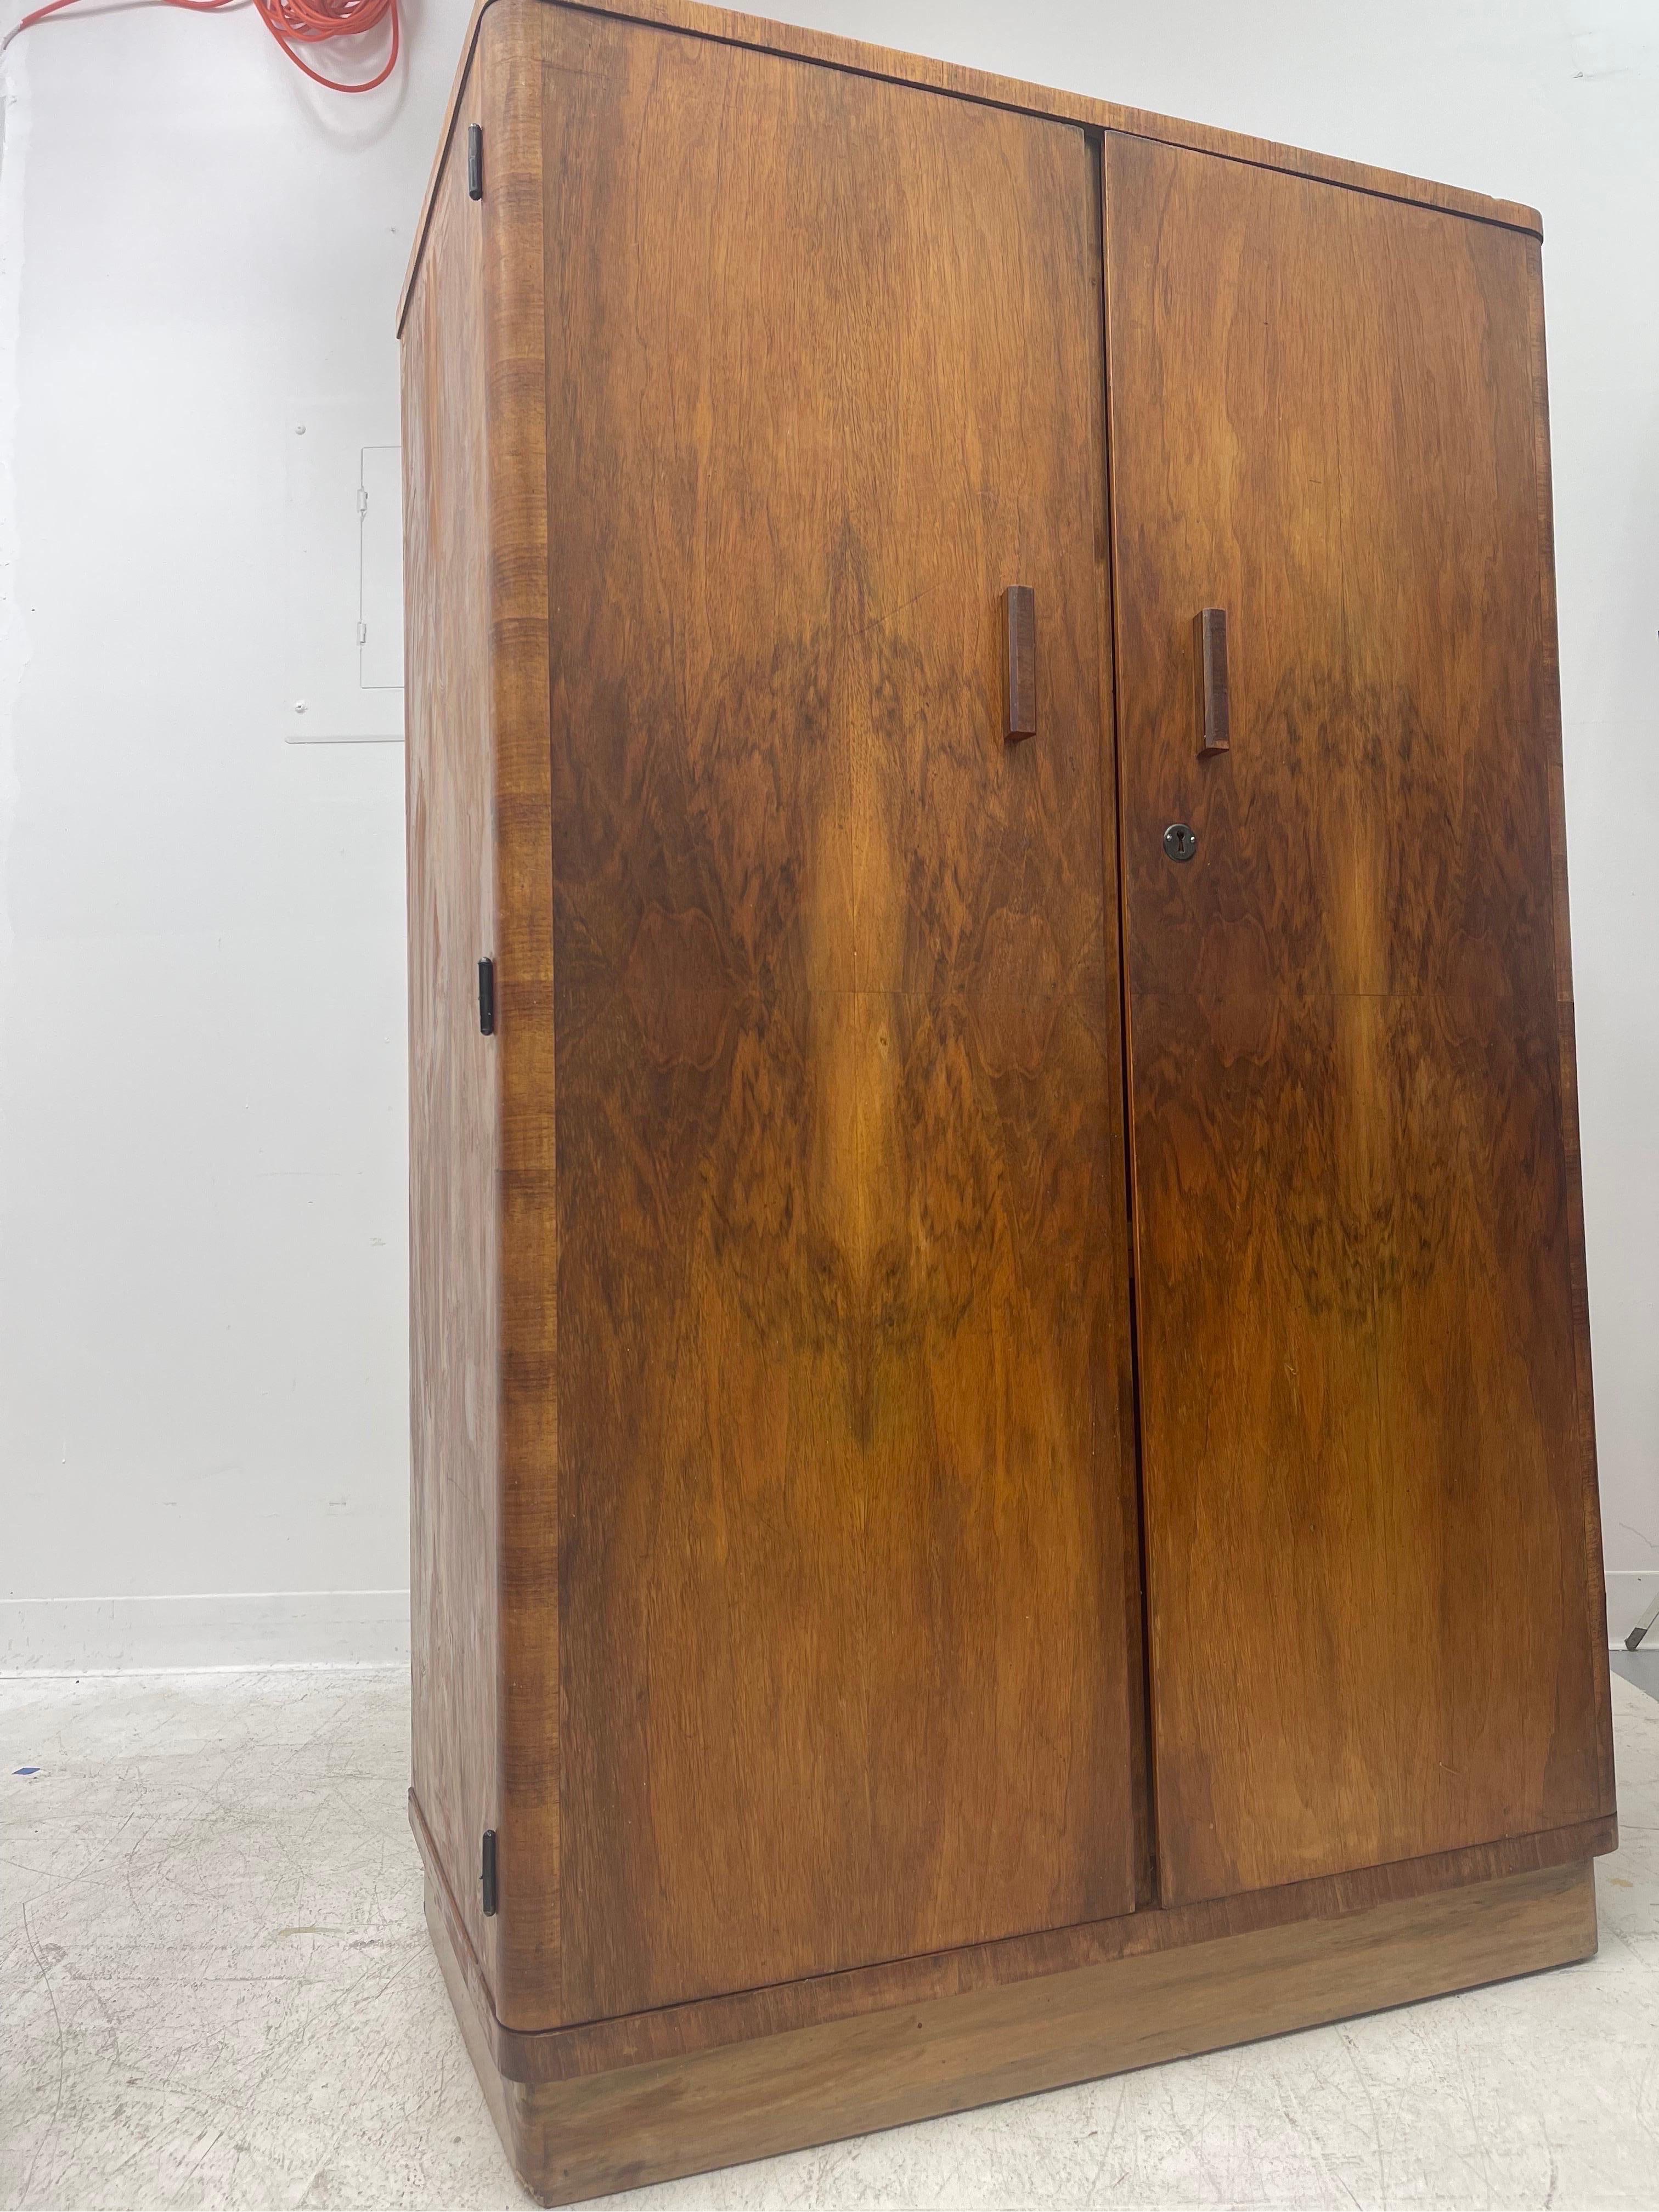 Vintage cabinet gorgeous wood grain.
Dimensions. 34 W ; 54 H ; 18 D.